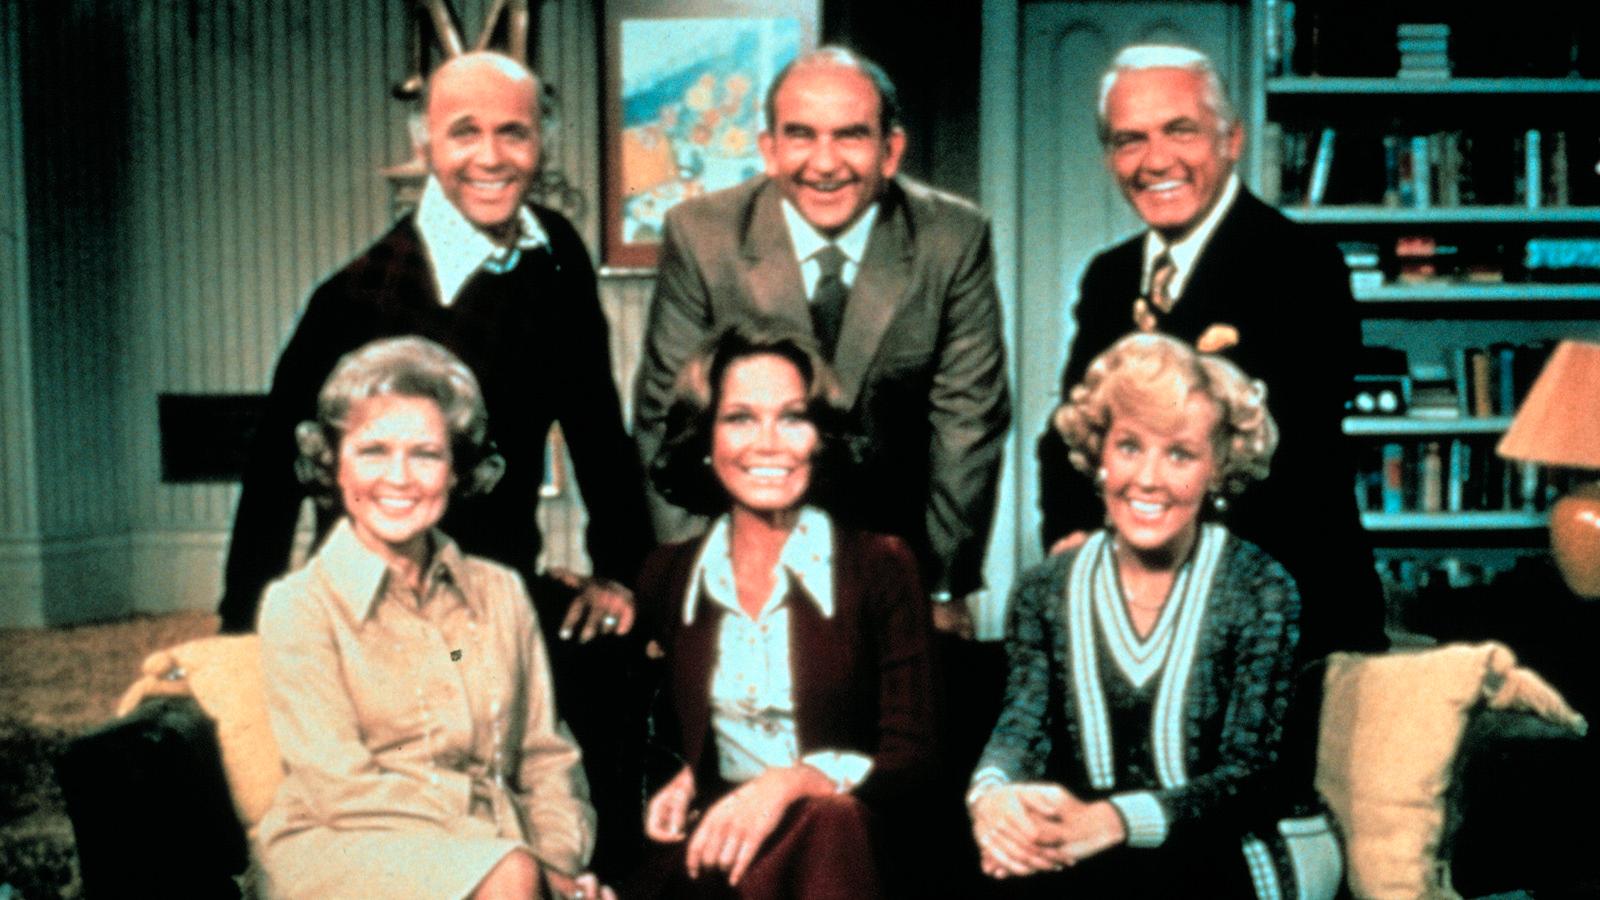 Georgia Engel (främre raden till höger) och de andra i 70-talsserien ”The Mary Tyler Moore show”.